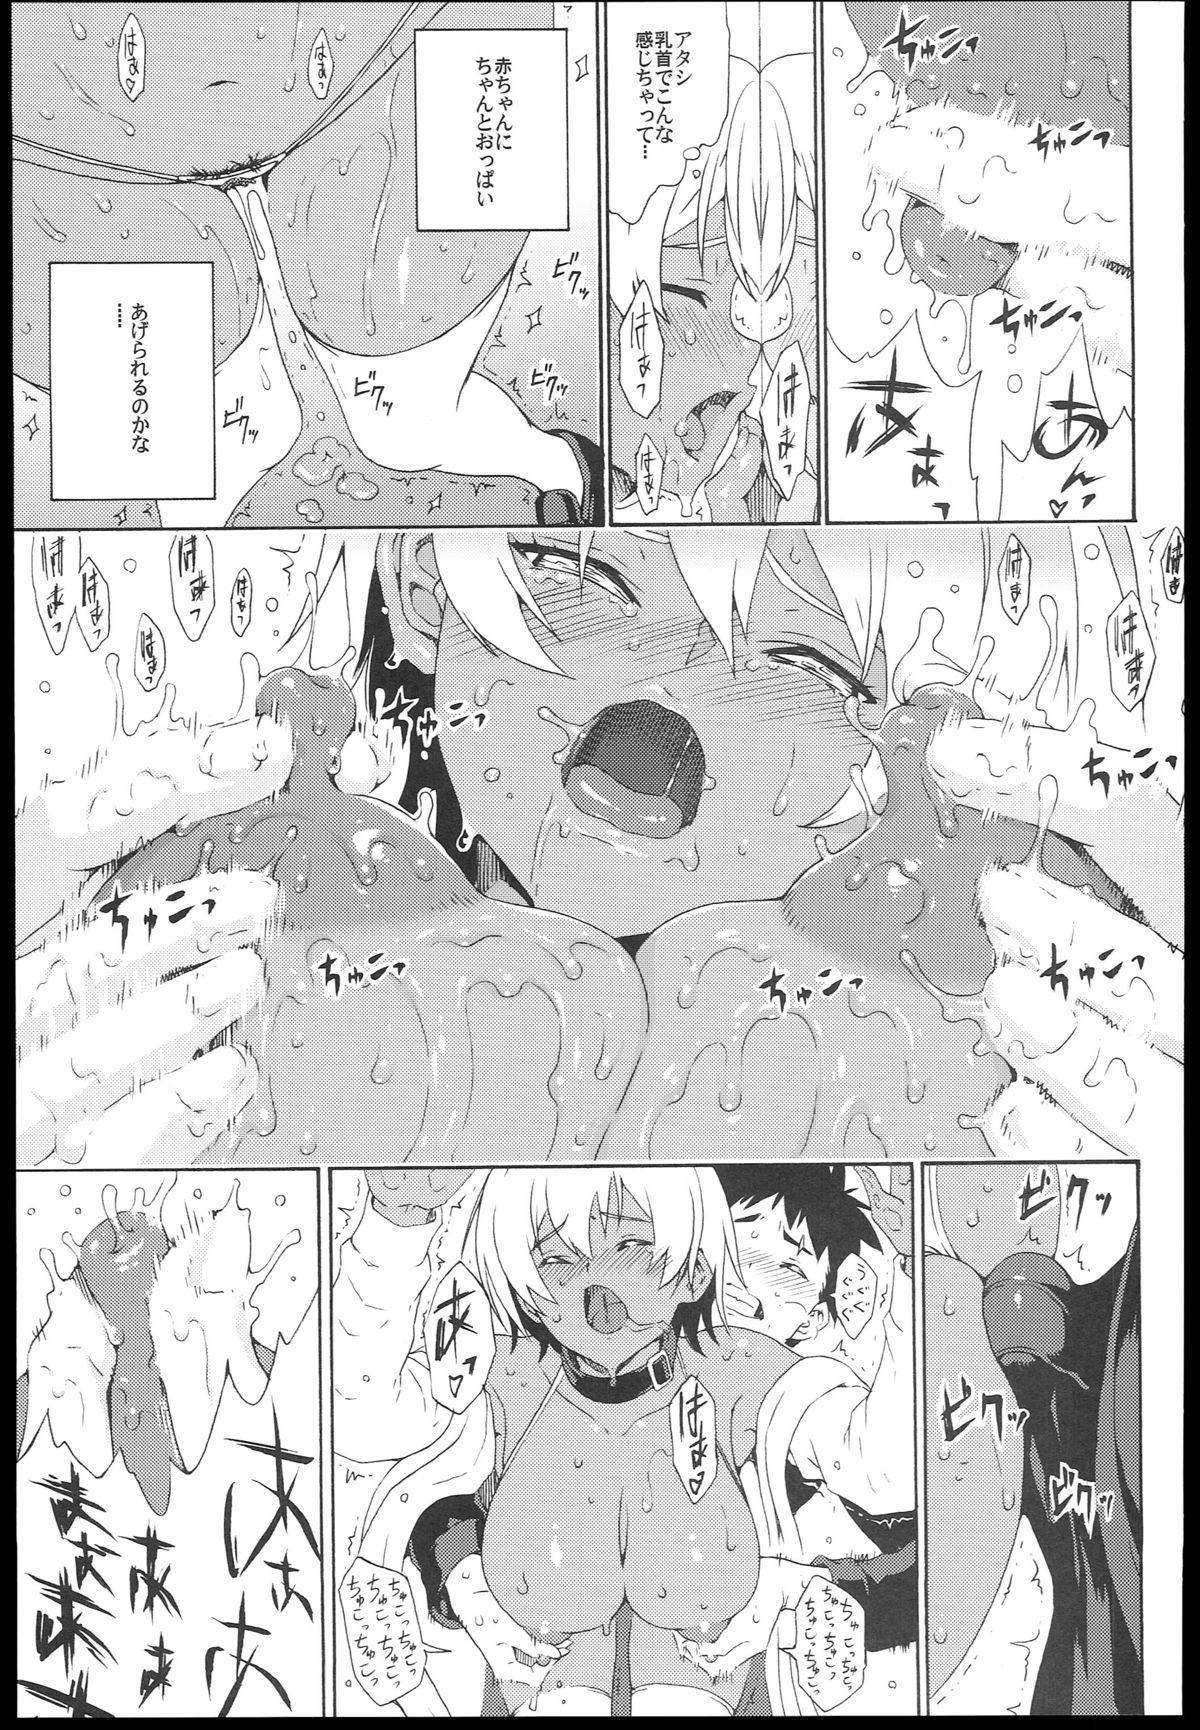 Tesao Ikumi-chan Niku Niku - Shokugeki no soma Orgy - Page 11